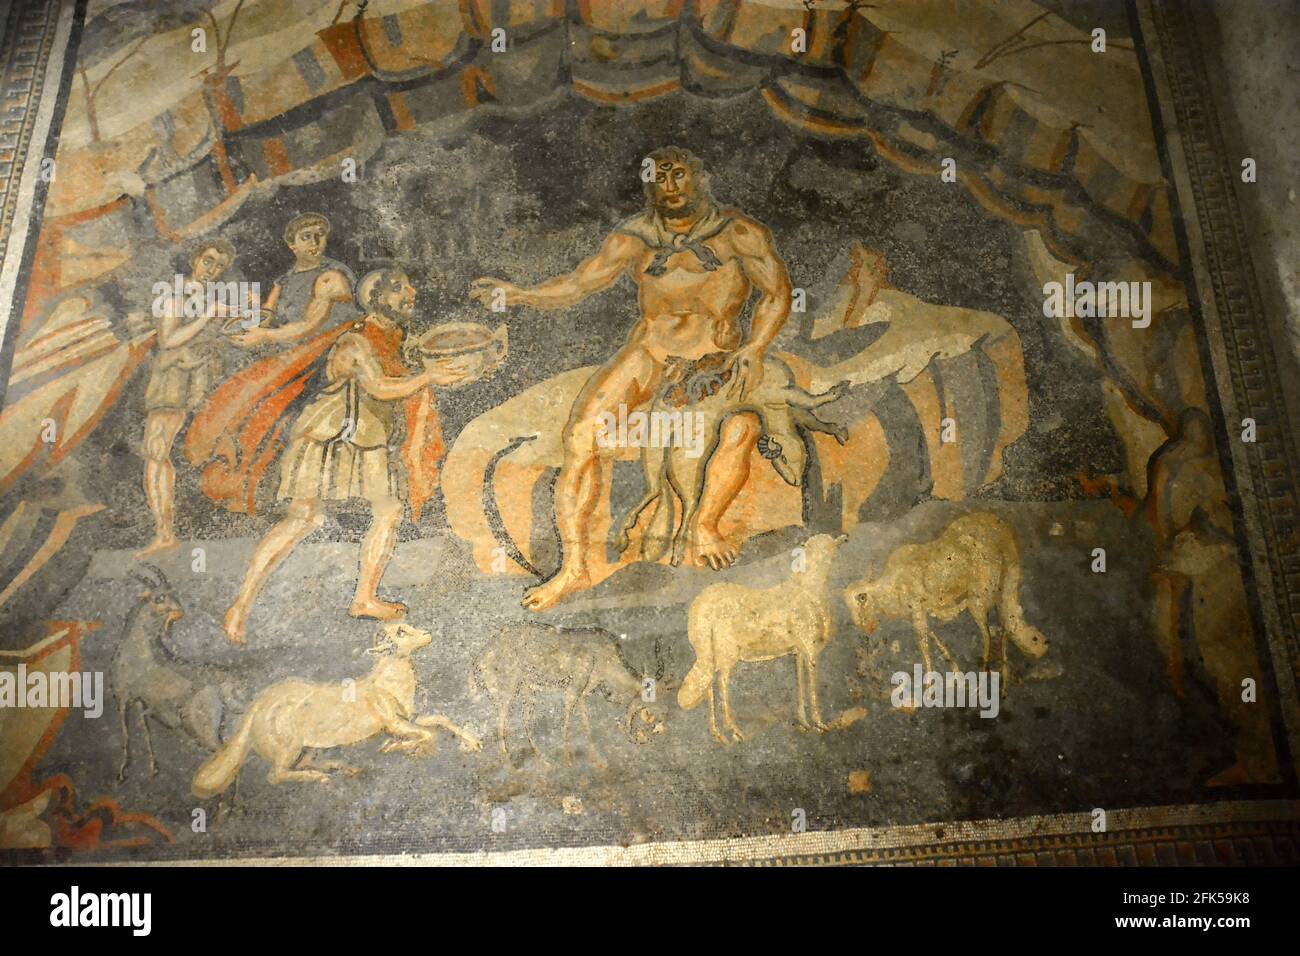 Altes römisches Mosaik des Odysseus, das den Zyklopen-Riesen Polyphemus in seiner Höhle betrunken machte. Aus Buch IX der Odyssee. In der UNESCO-Liste Altertümliches Rom Stockfoto